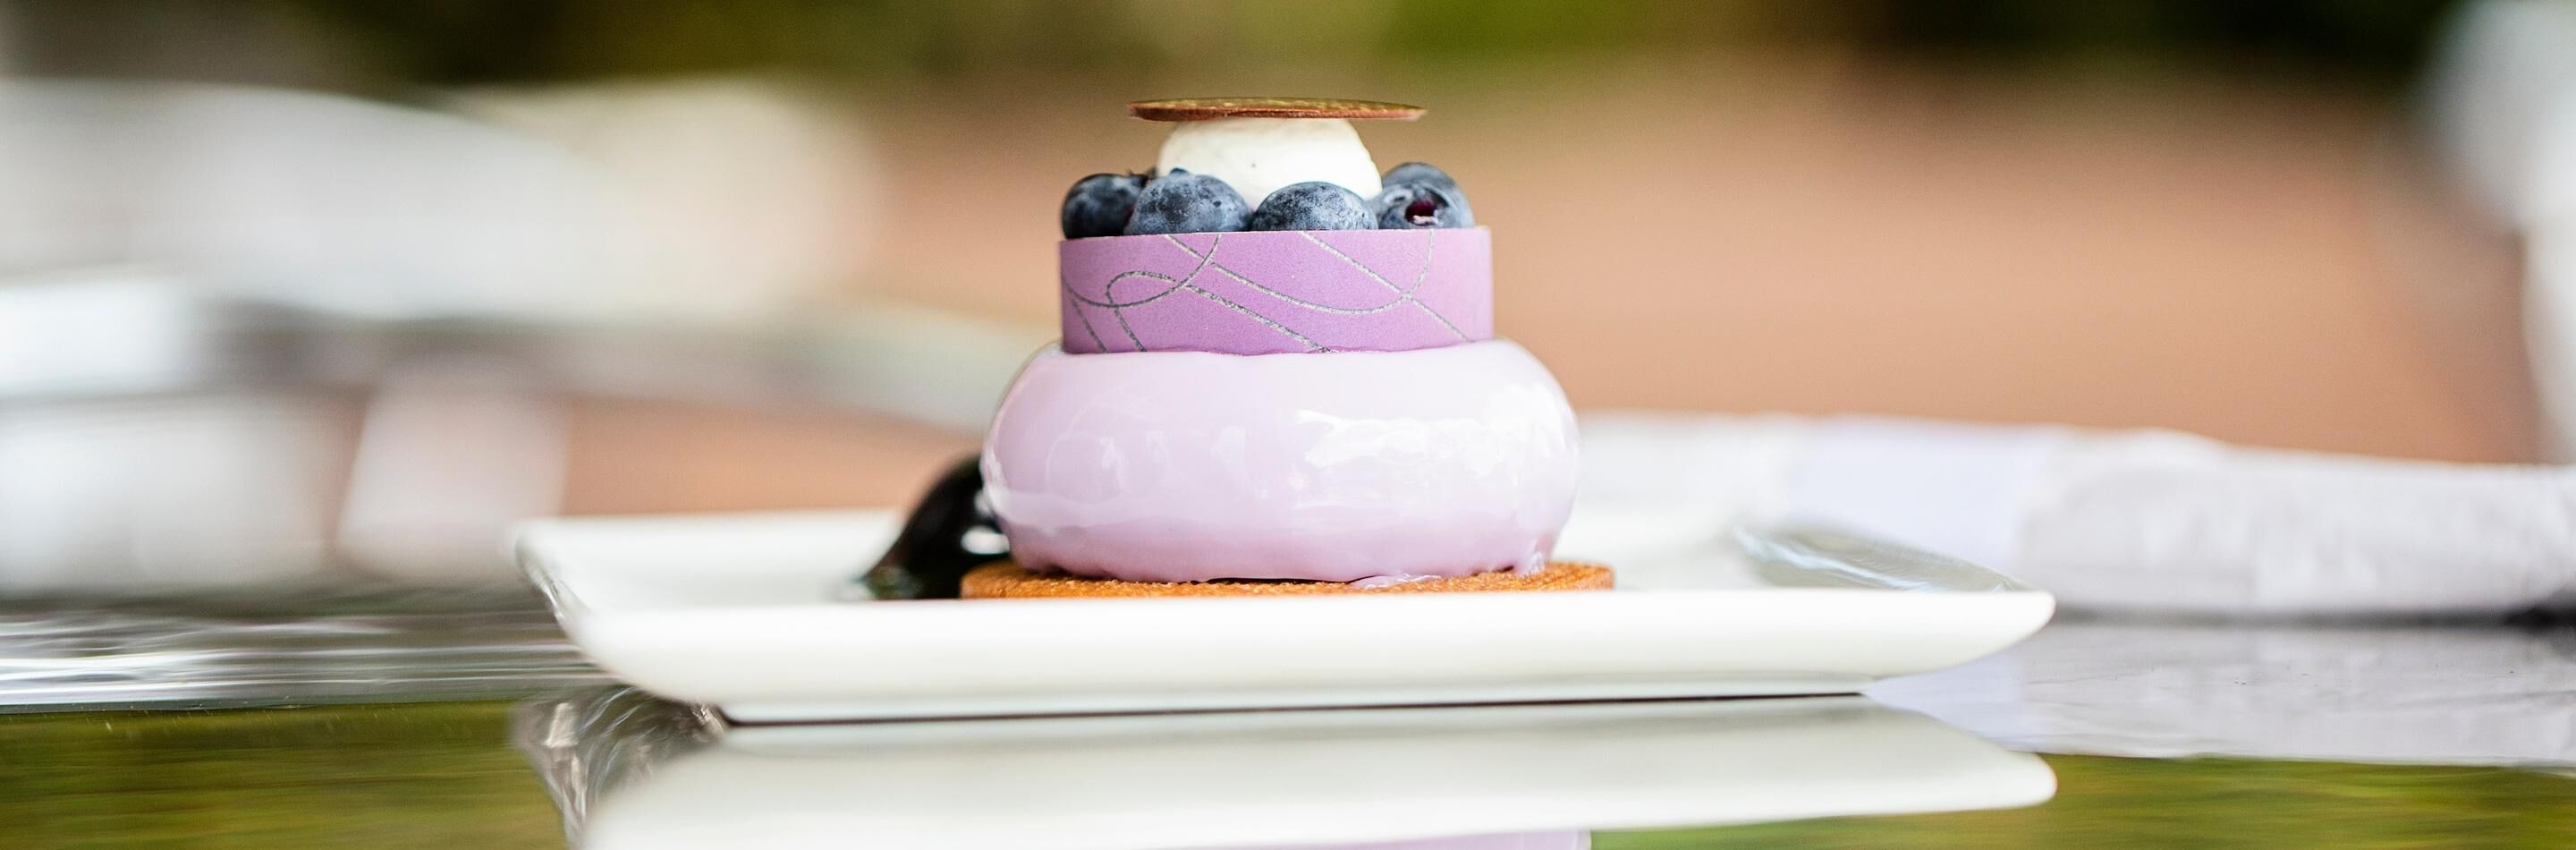 Mini Blueberry Cheesecake